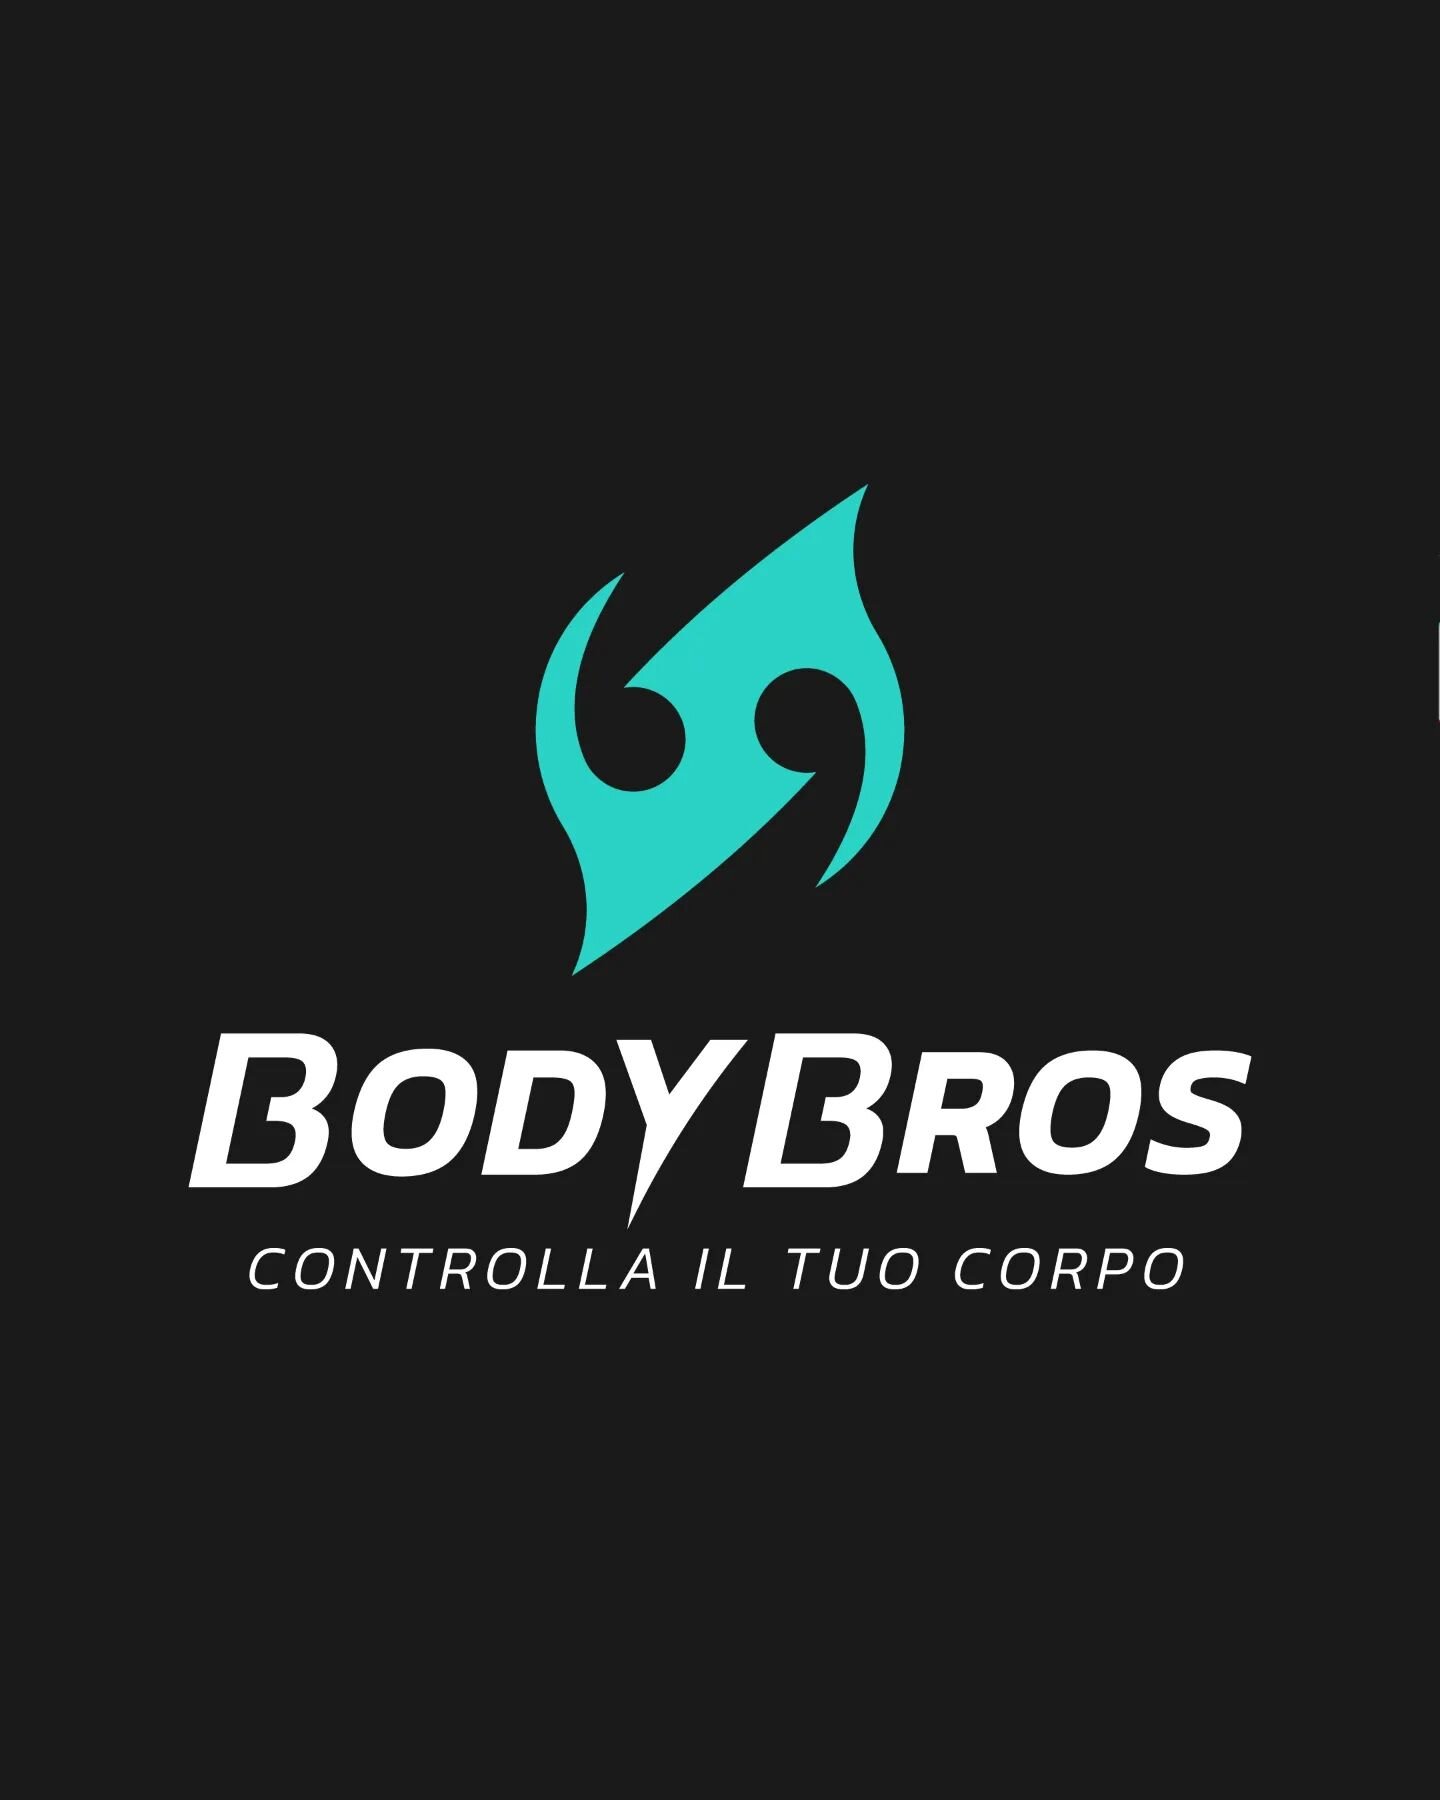 Per. 3/3 @bodybros.it ecco il concept 💪

BRIEF. Sono stato contattato da Luigi, fondatore di BodyBros, per creare il logo e l&rsquo;identit&agrave; visiva del suo marchio. La richiesta di Luigi &egrave; stata quella di un logo &ldquo;astratto&ldquo;